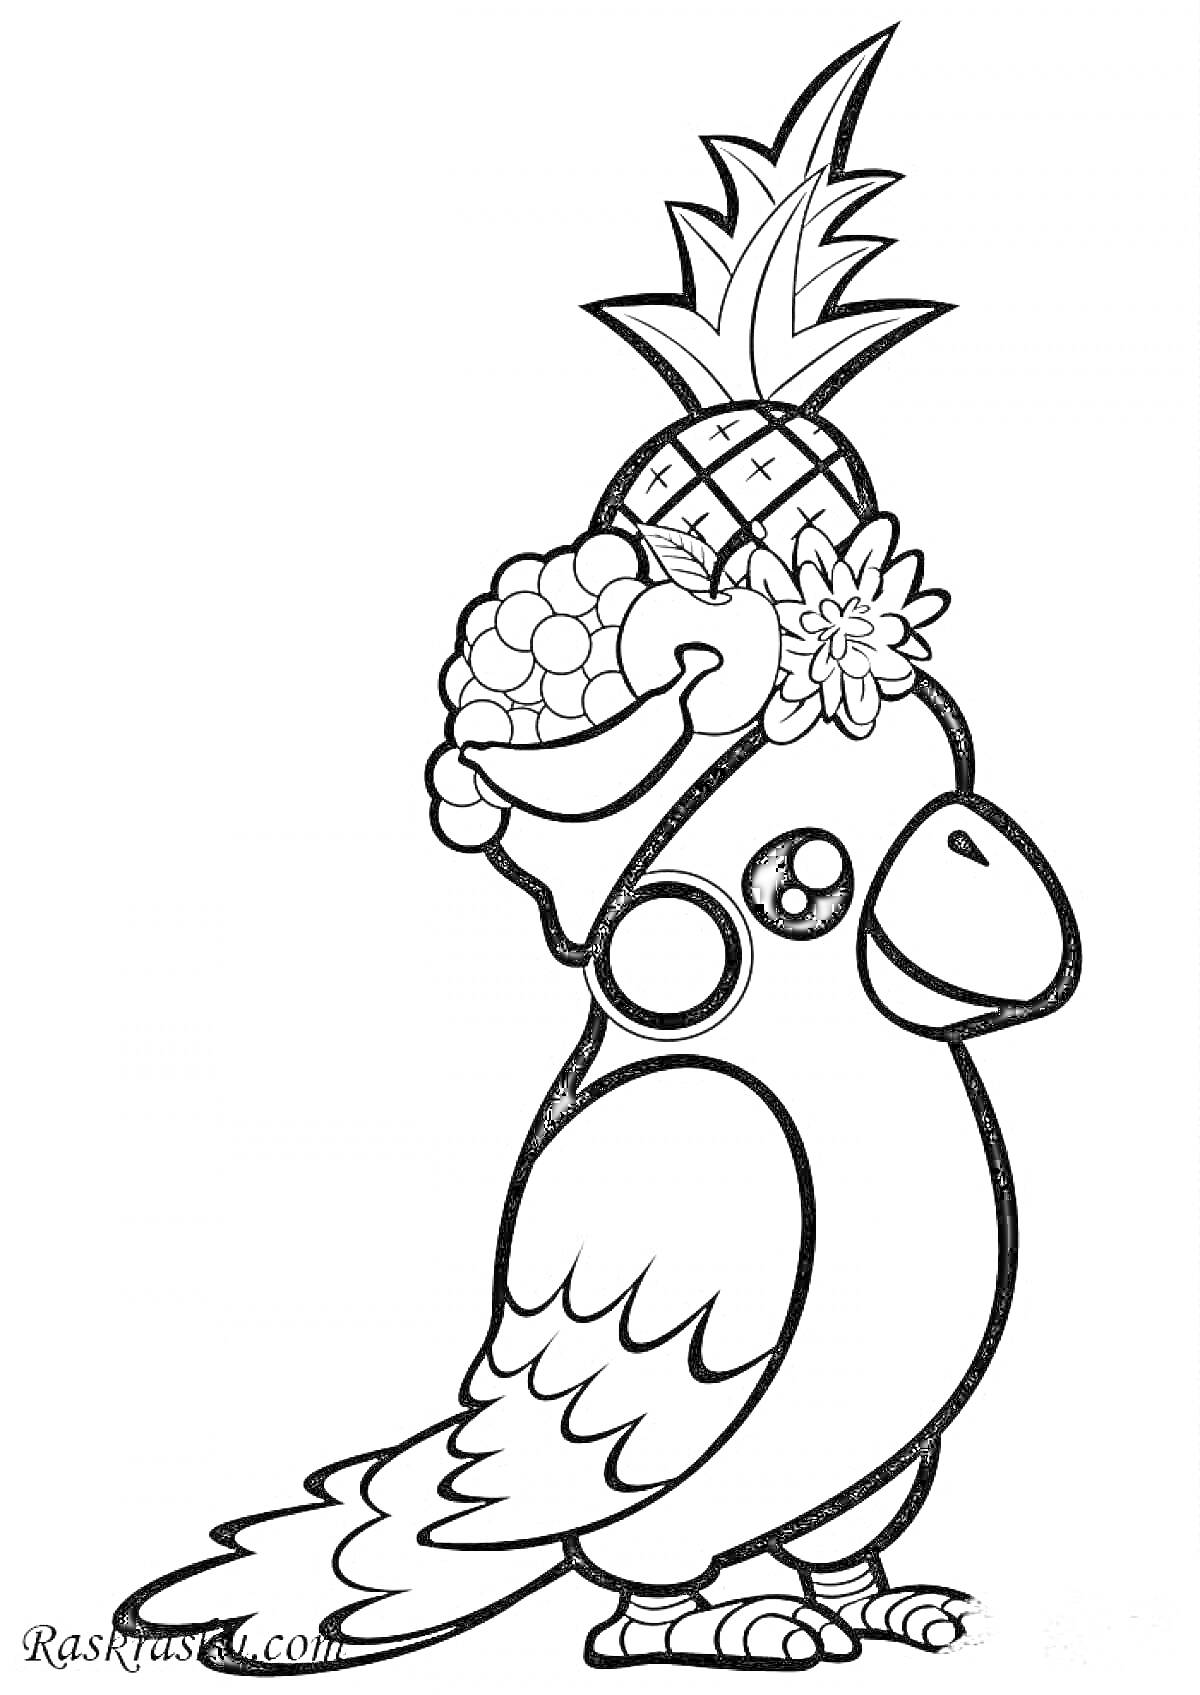 Раскраска Попугай с фруктами и цветами на голове